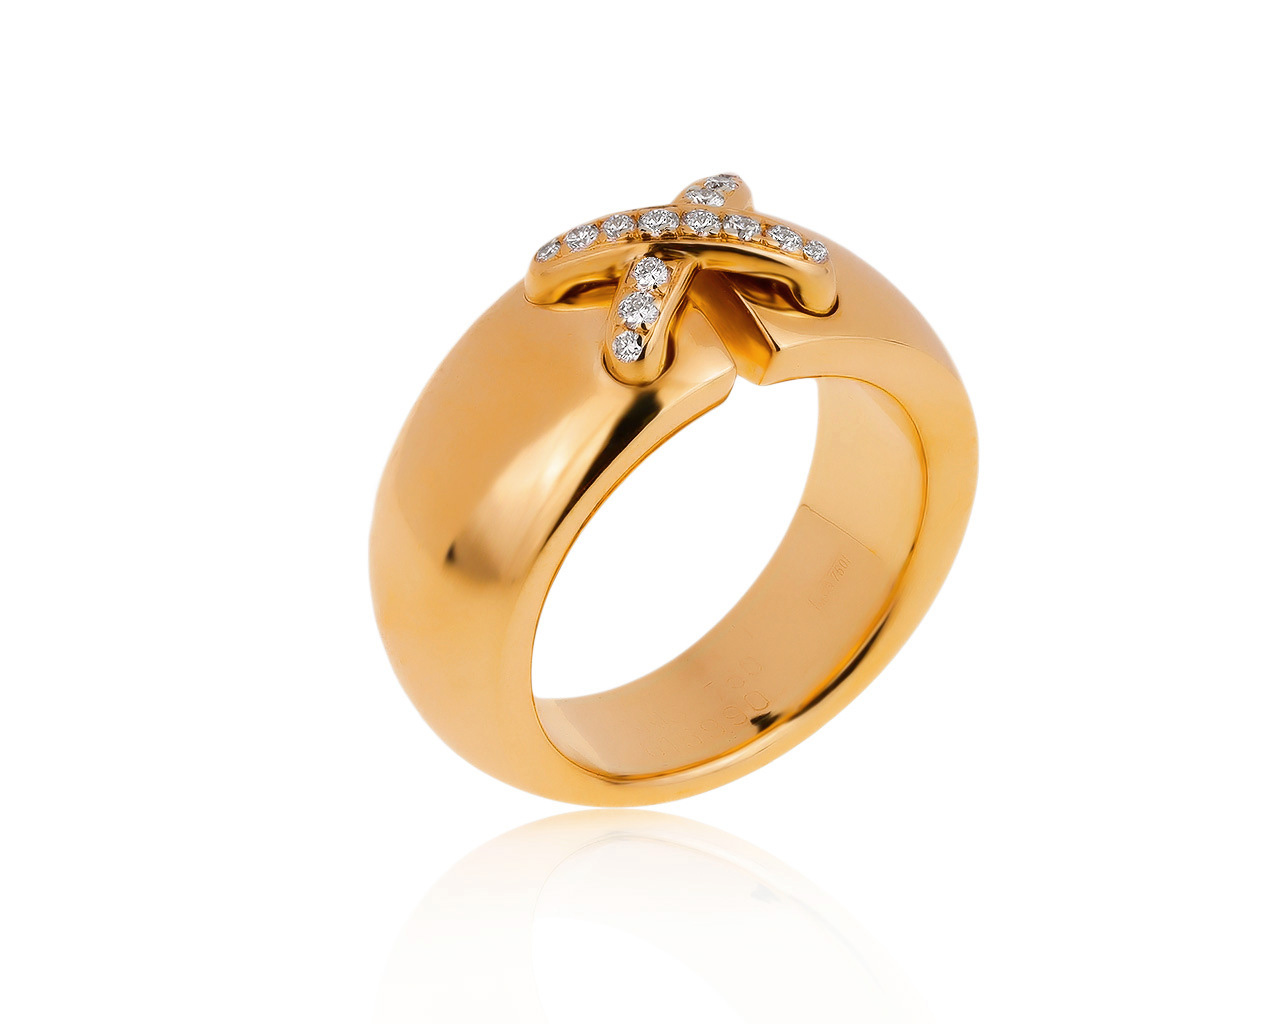 Оригинальное золотое кольцо с бриллиантами 0.16ct Chaumet 150320/1